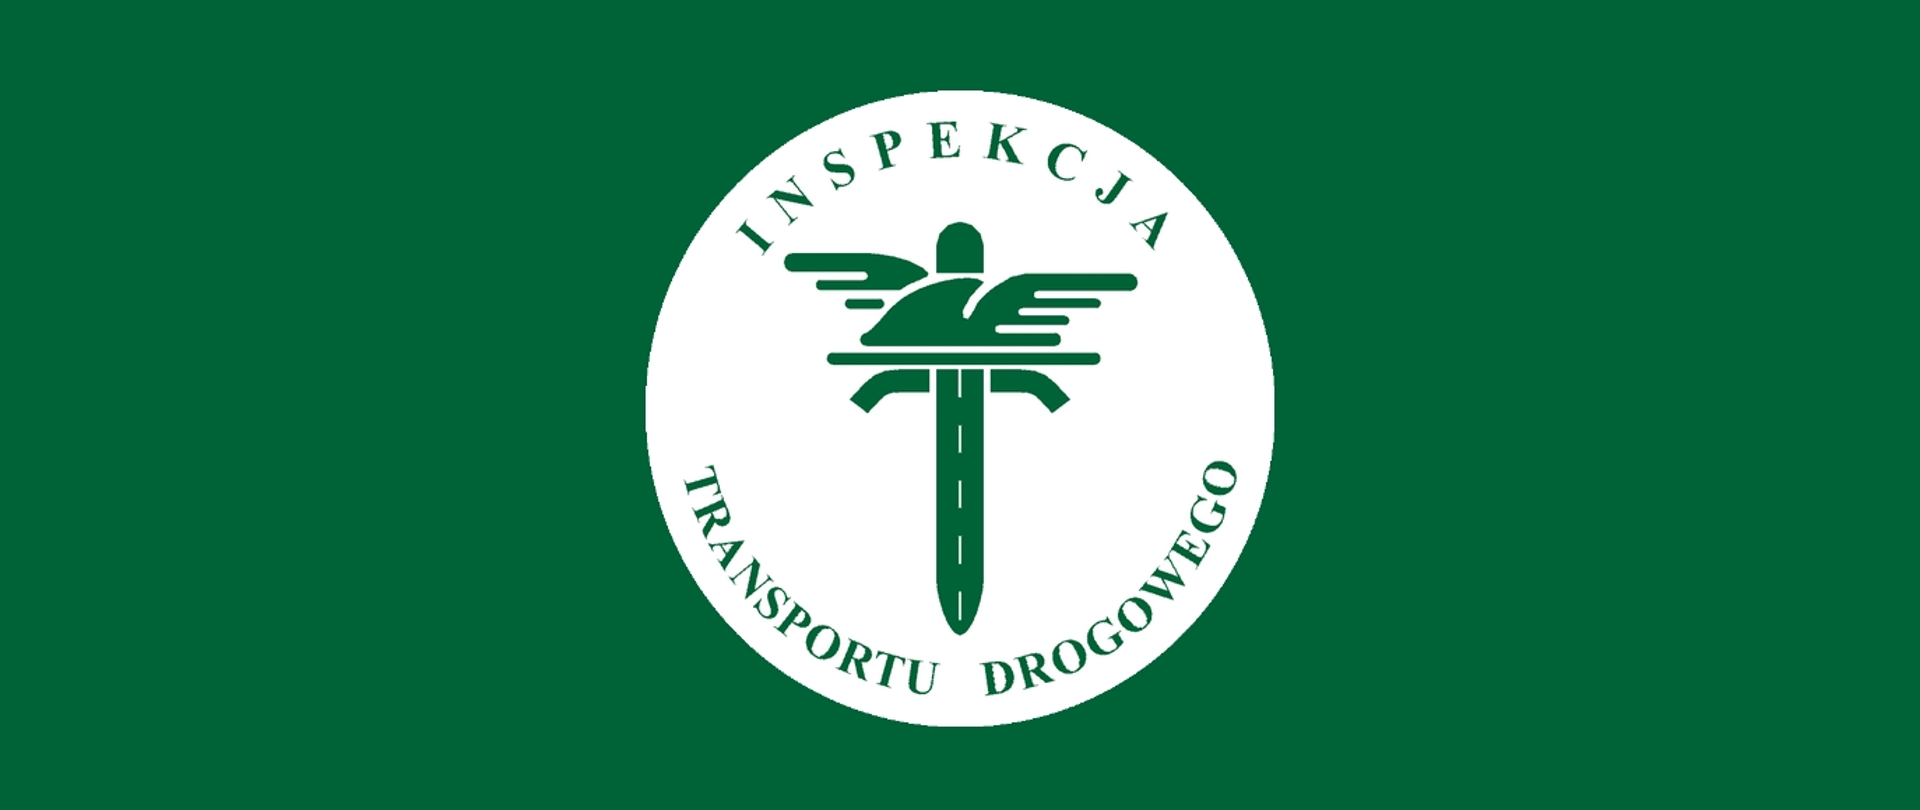 Na zielonym tle logo inspekcji transportu drogowego (motyw zielony na białym tle)